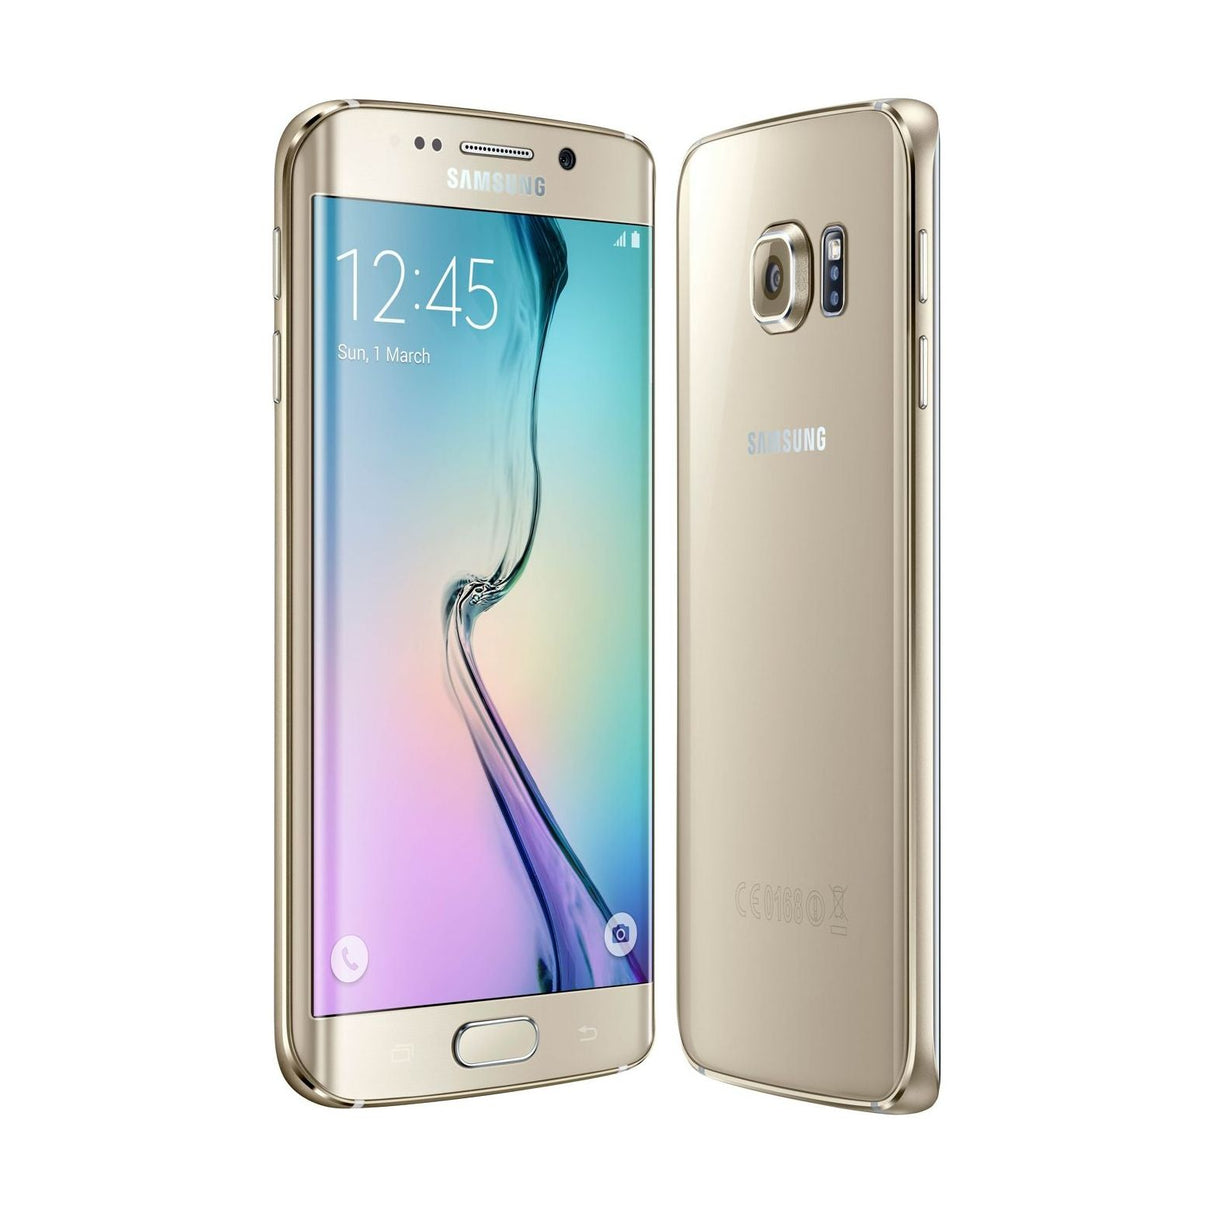 Samsung Galaxy S6 edge - 128 GB - Gold Platinum - Verizon - CDMA